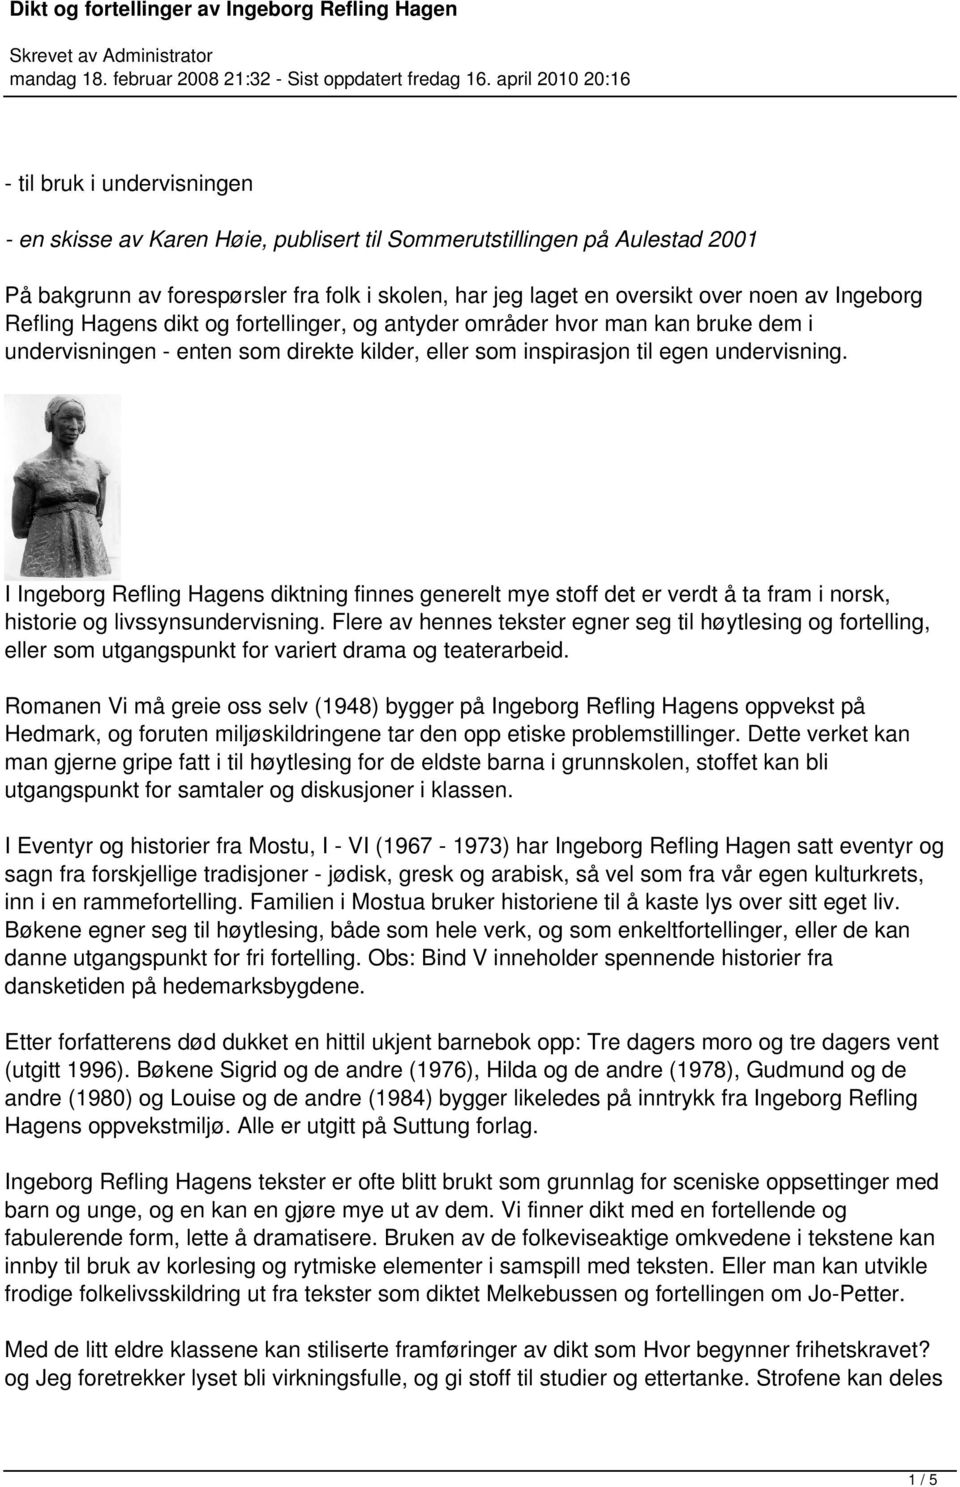 I Ingeborg Refling Hagens diktning finnes generelt mye stoff det er verdt å ta fram i norsk, historie og livssynsundervisning.